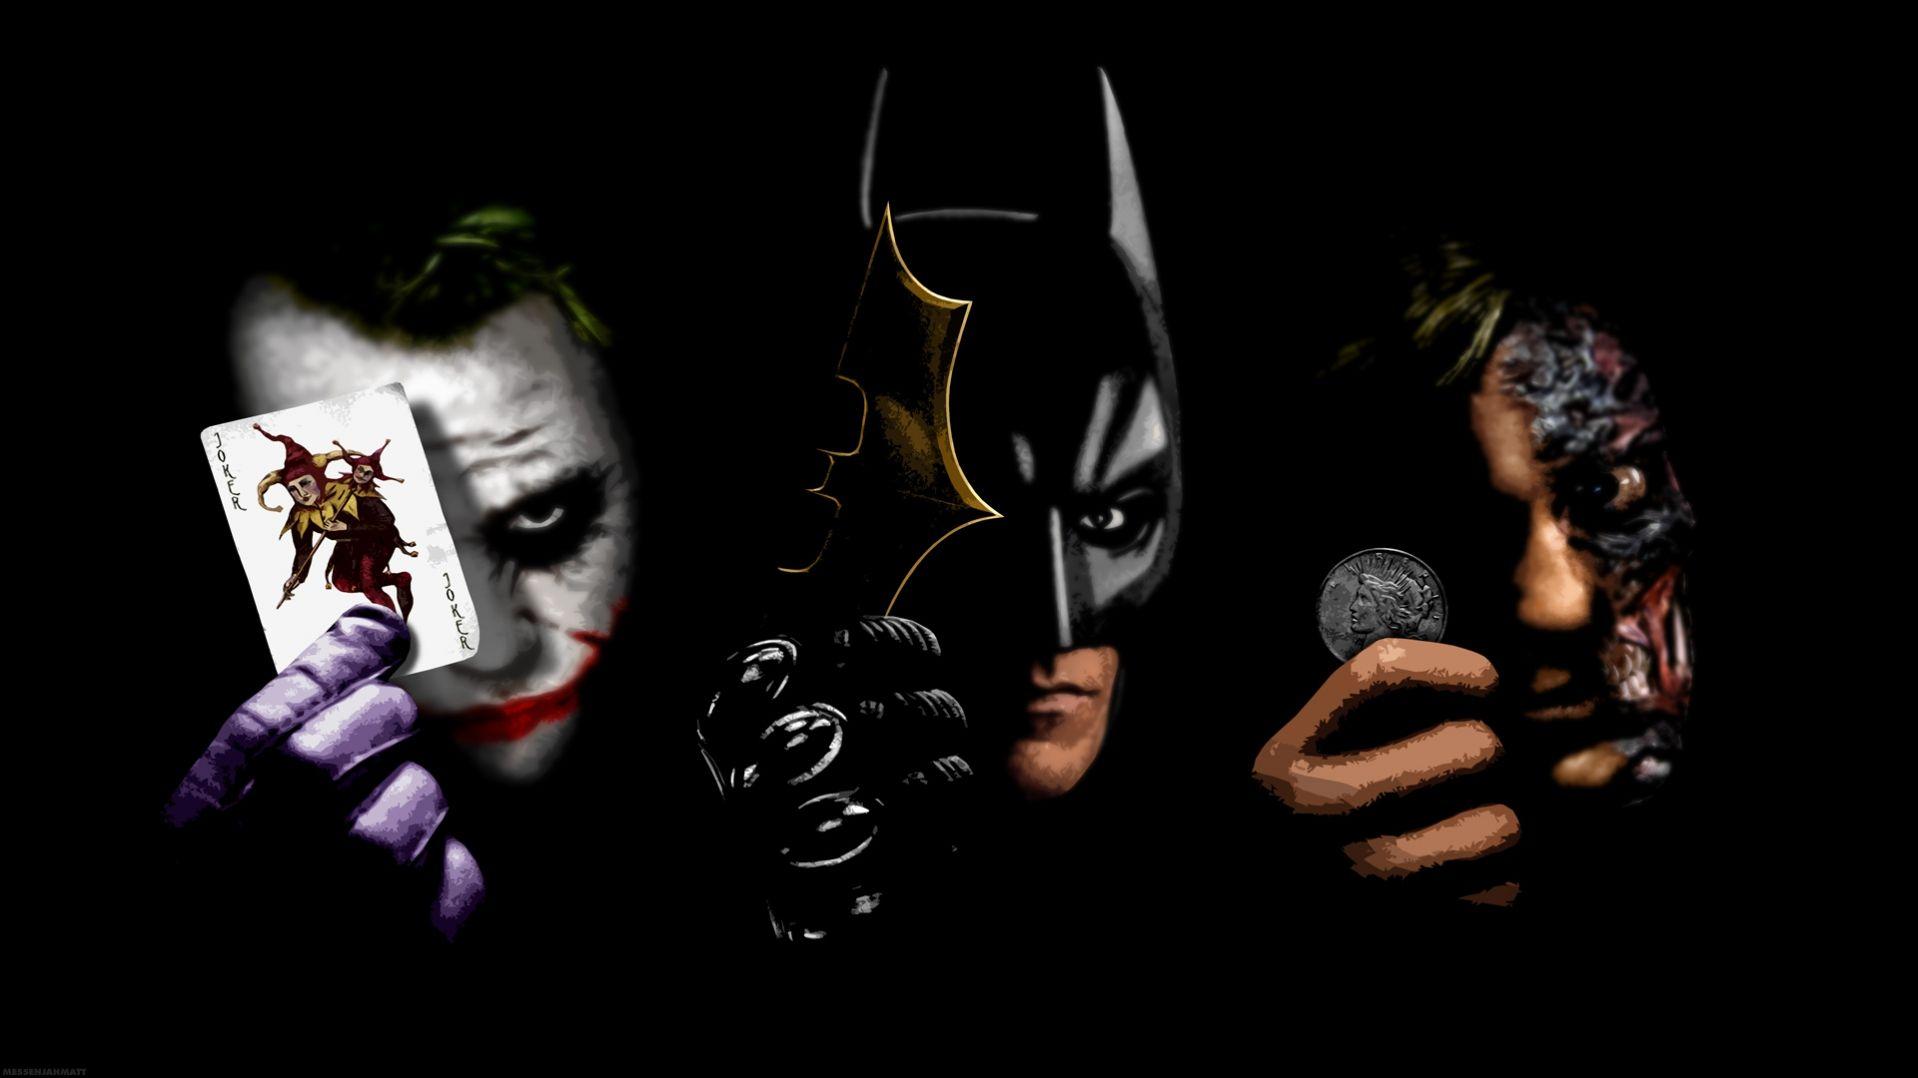 Two face , batman and joker HD Wallpaper. Batman joker wallpaper